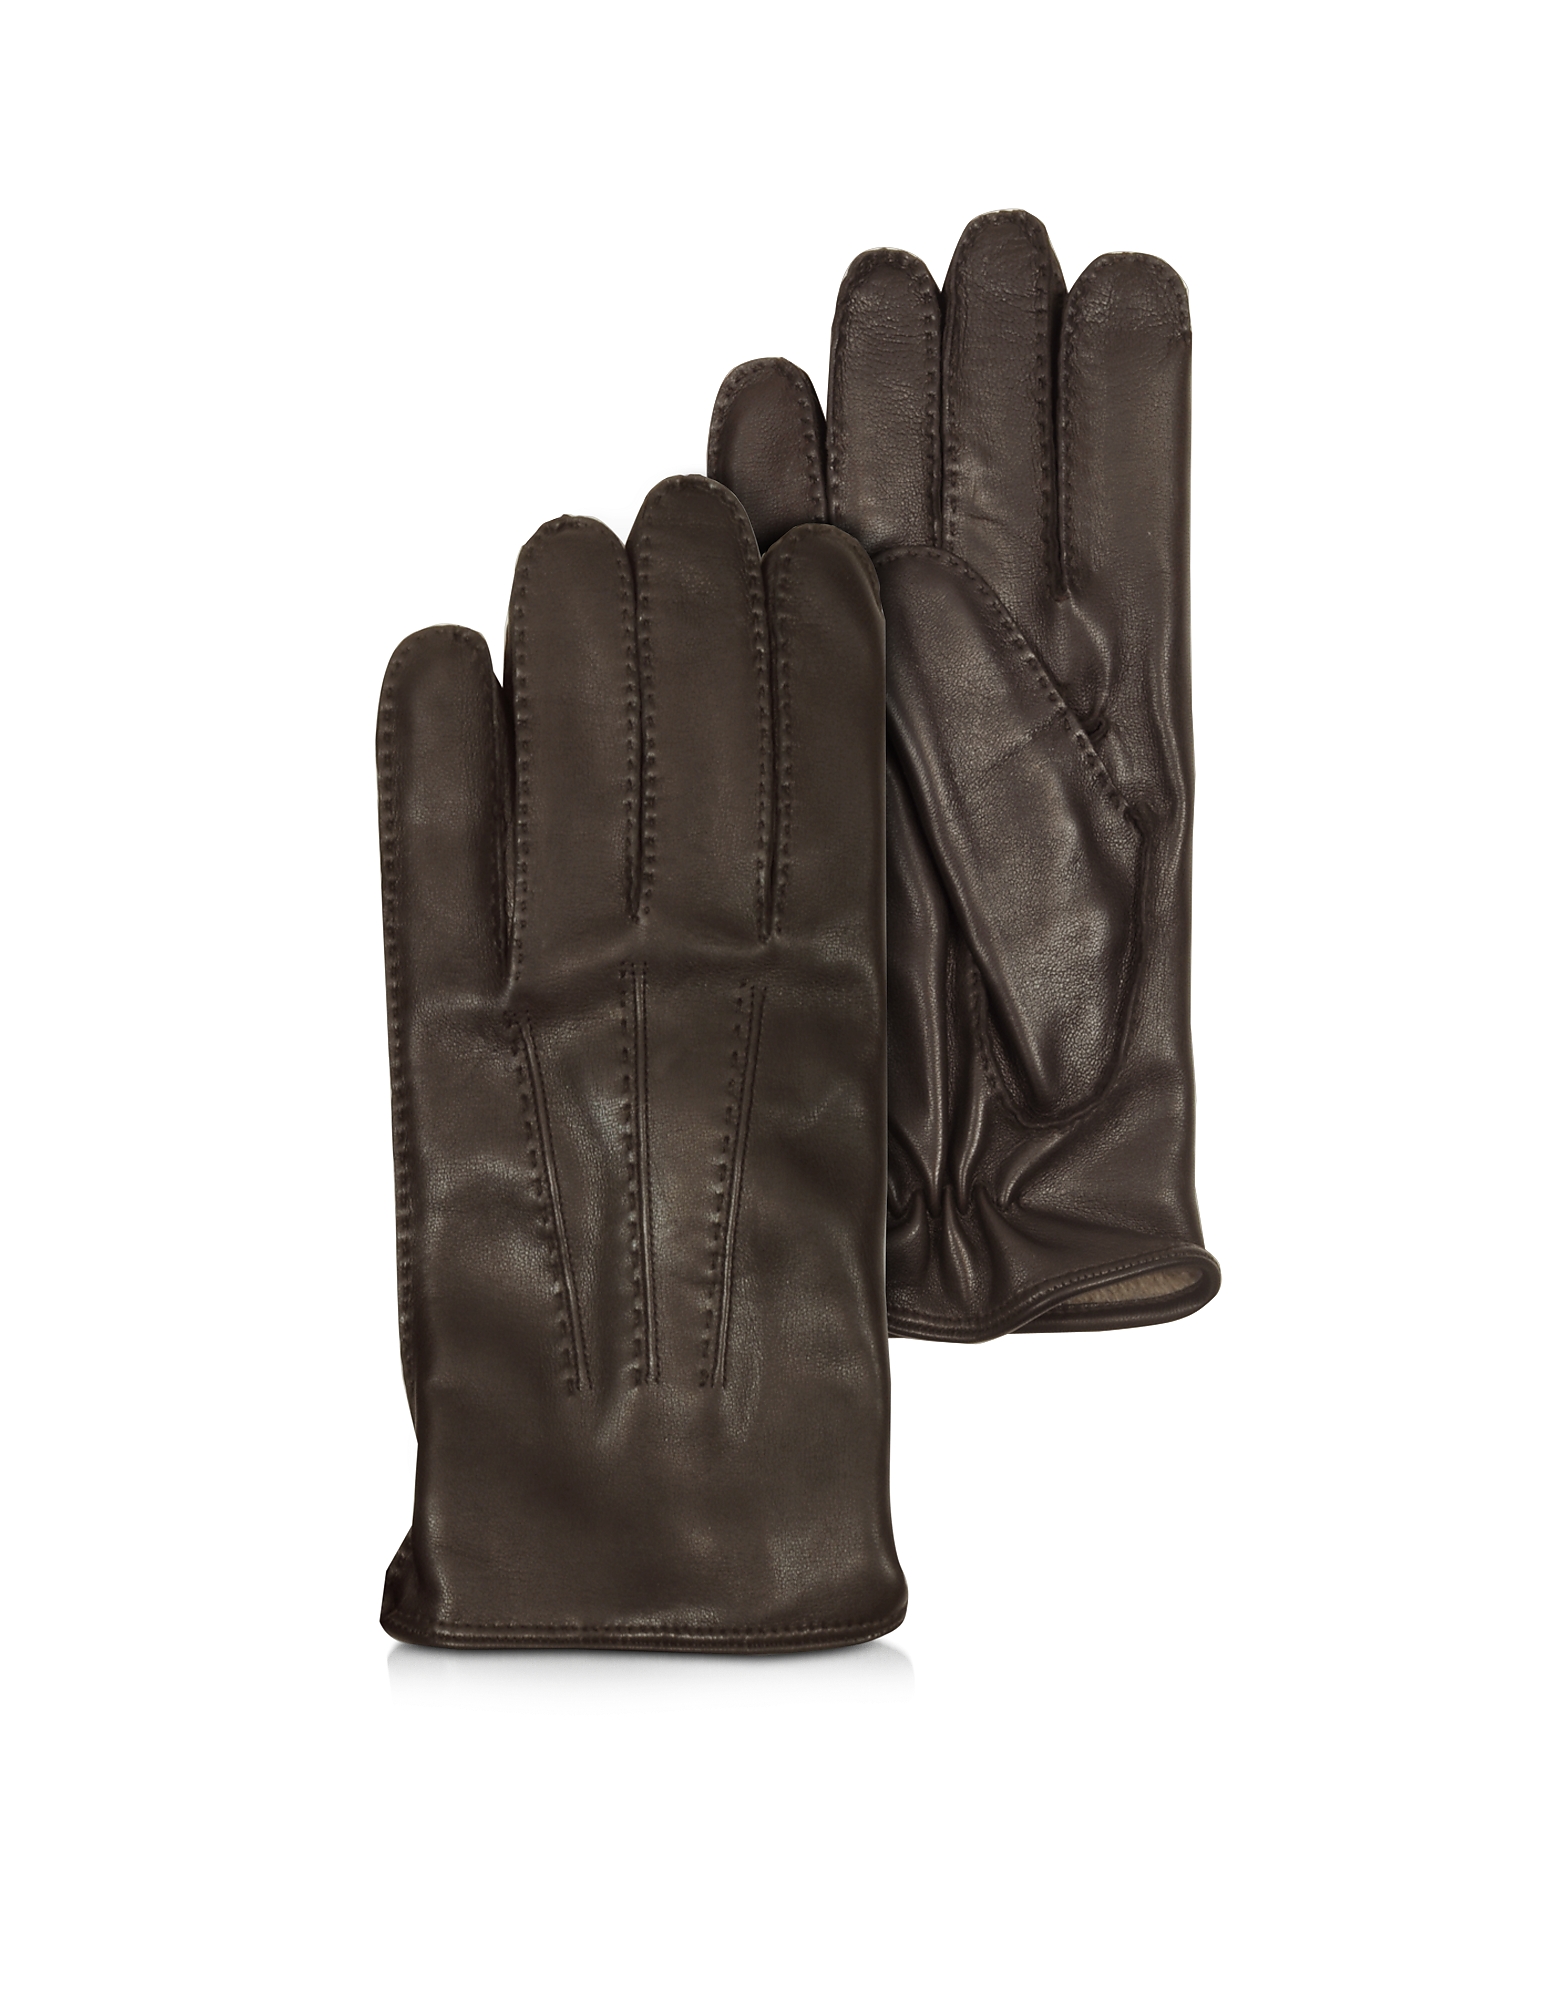 Moreschi Canada Dark Brown Leather Men's Gloves w/Cashmere Lining